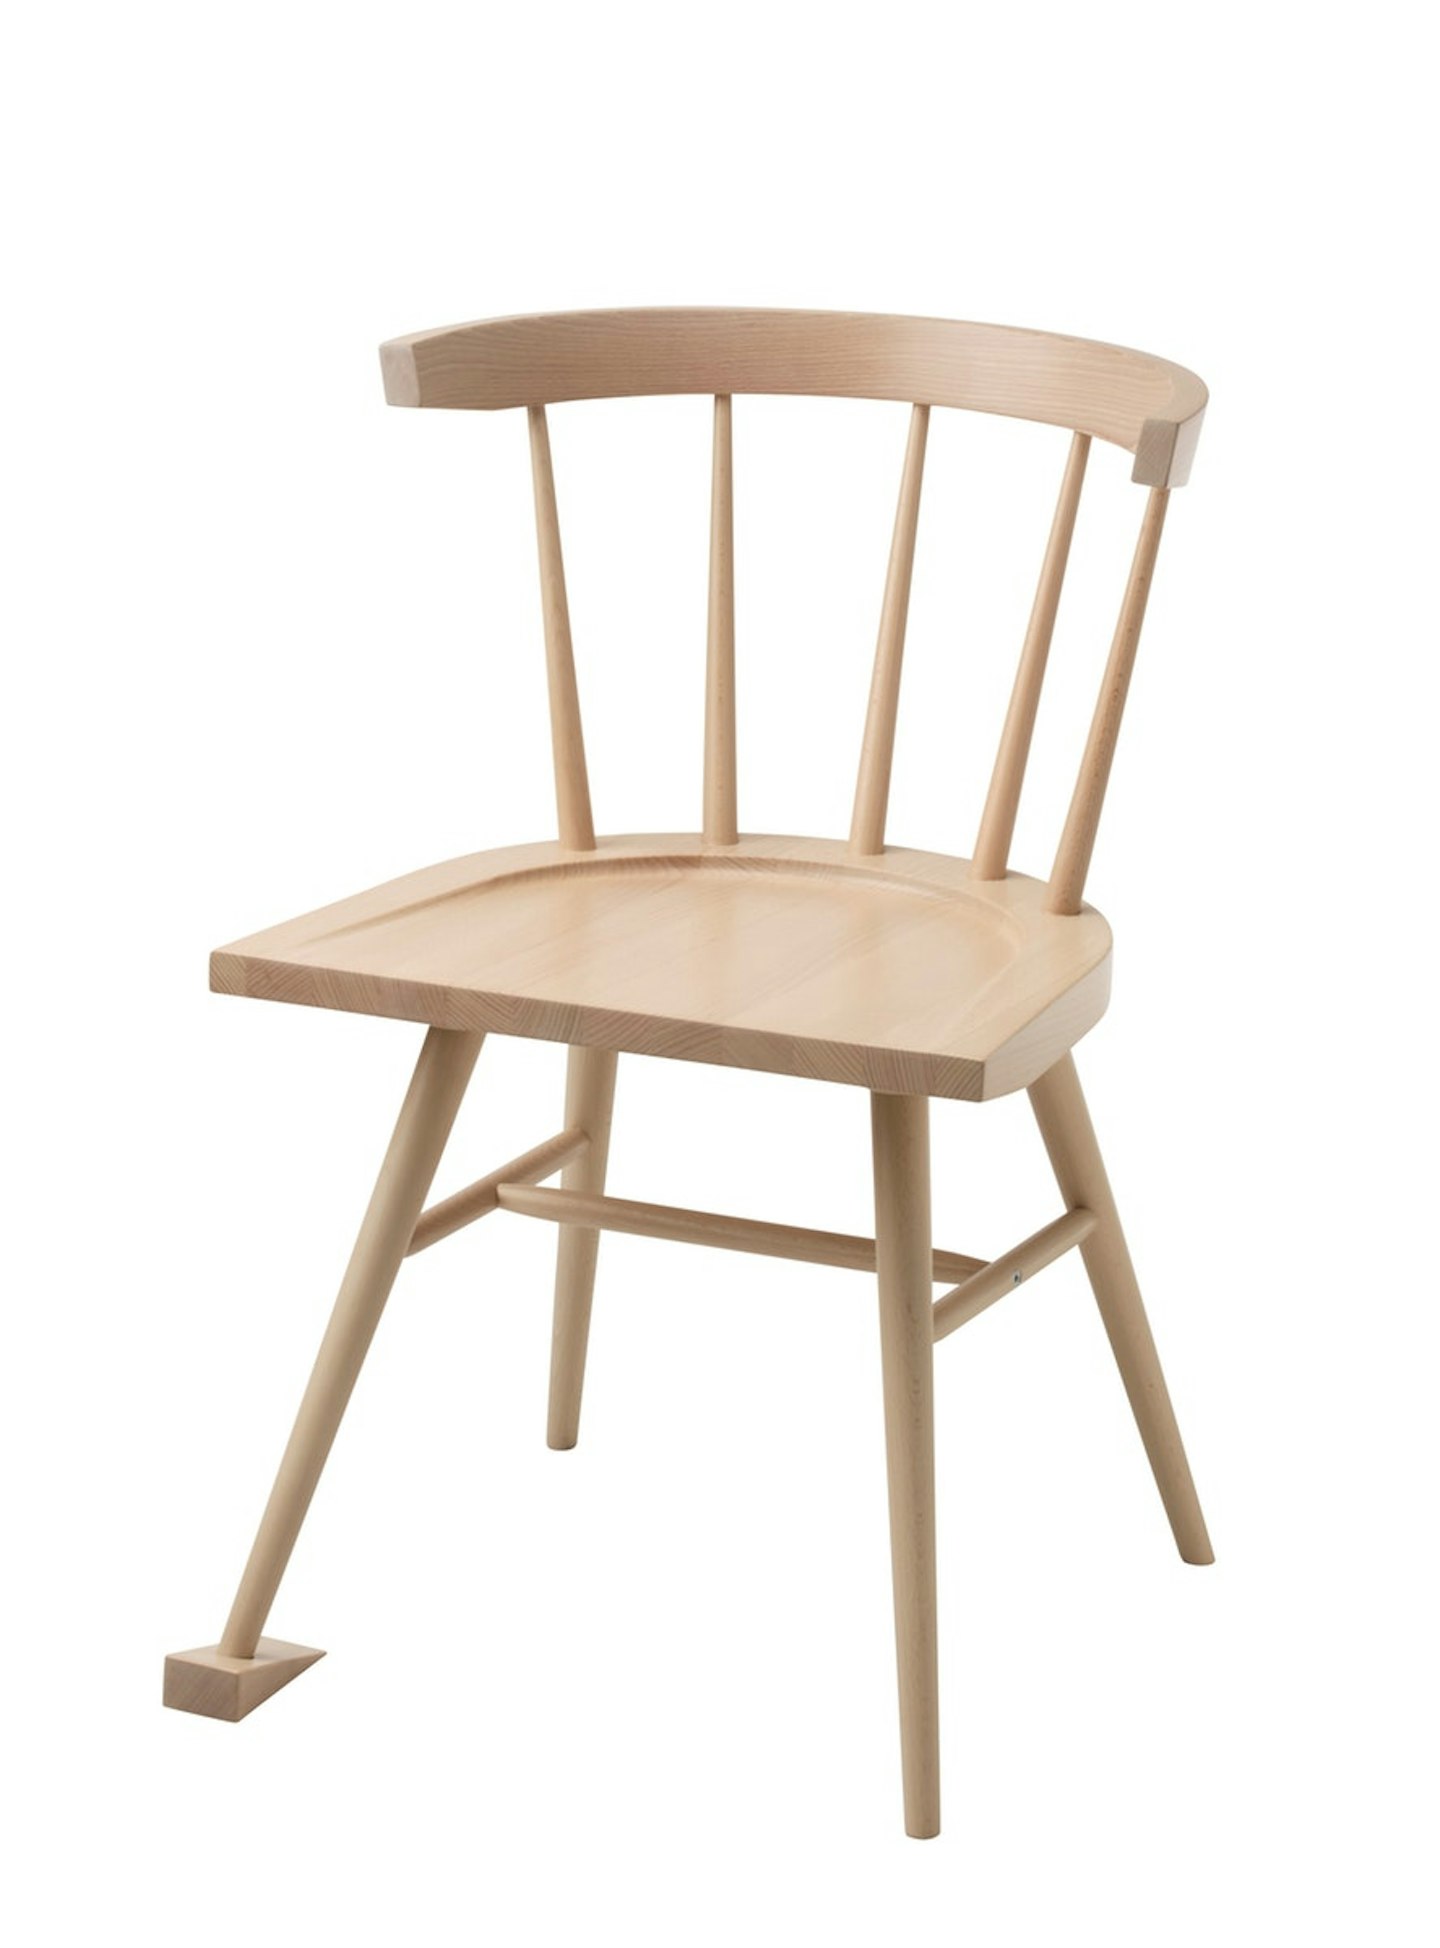 Chair, £99